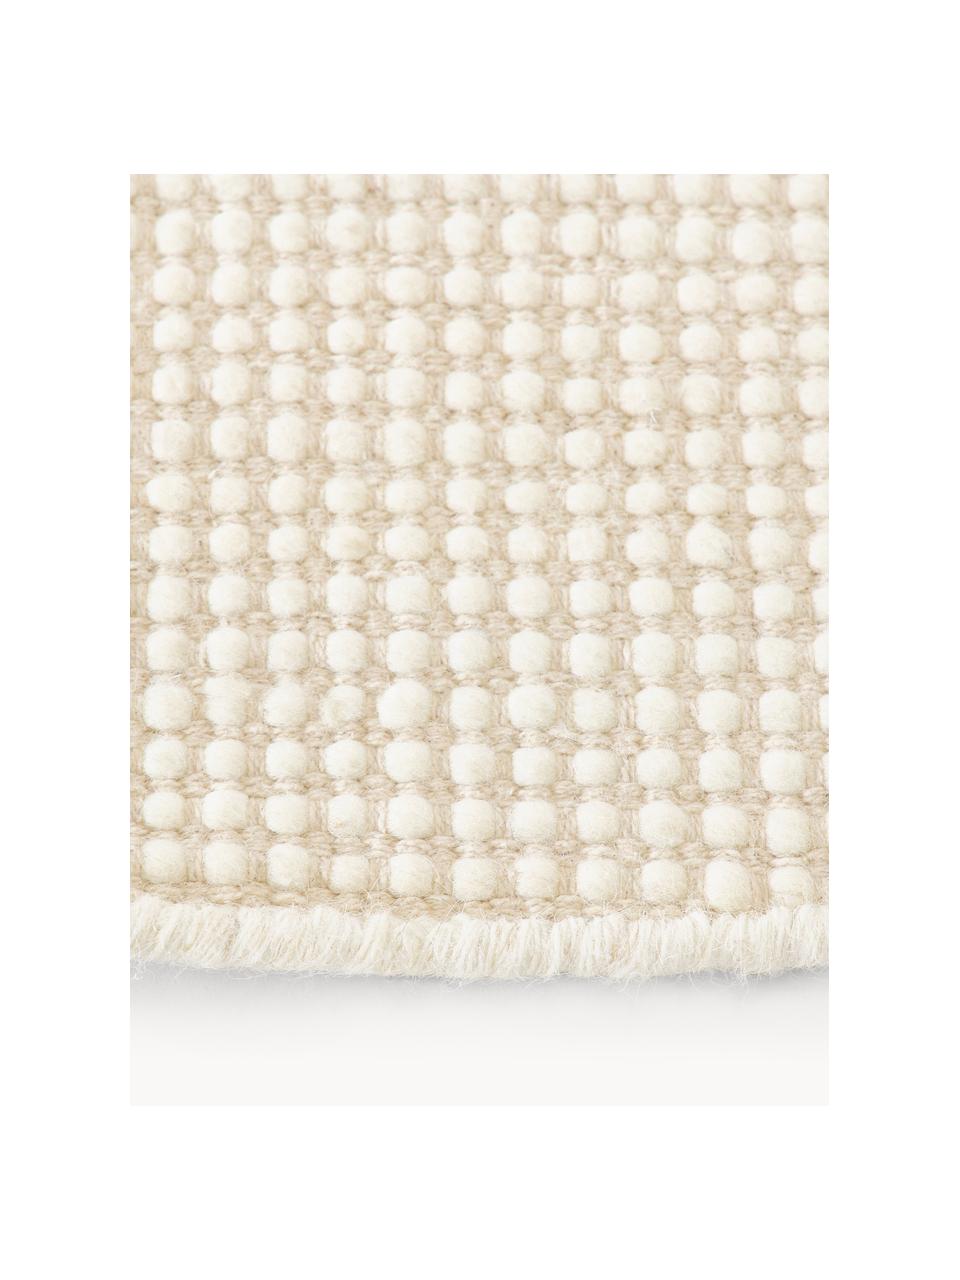 Kulatý vlněný koberec Amaro, ručně tkaný, Krémově bílá, béžová, Ø 140 cm (velikost M)